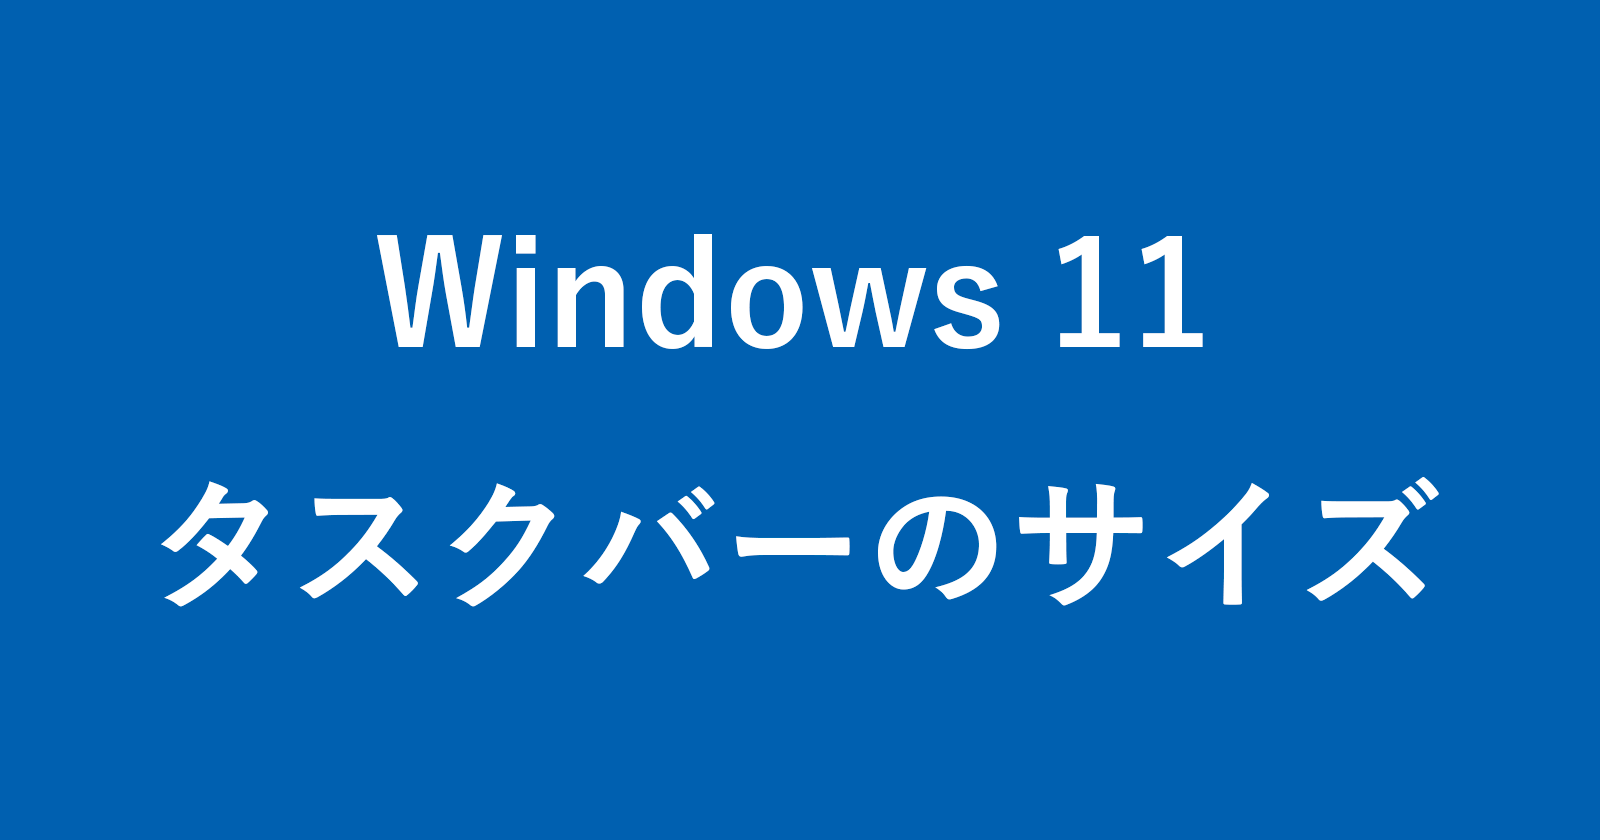 windows 11 taskbar size